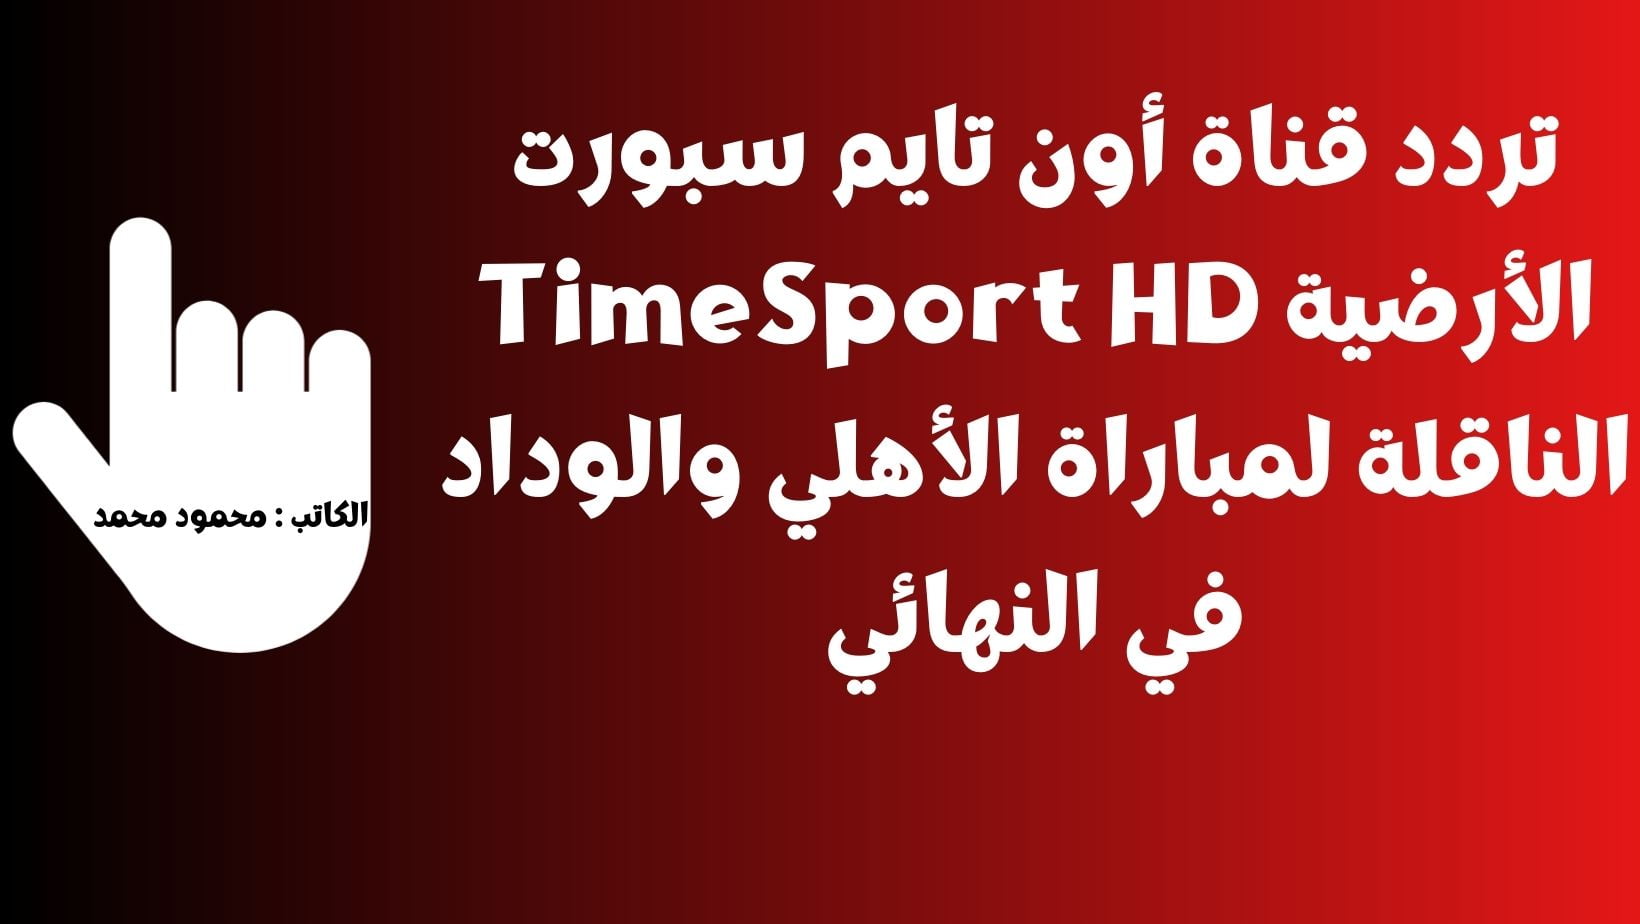 تردد قناة أون تايم سبورت الأرضية TimeSport HD